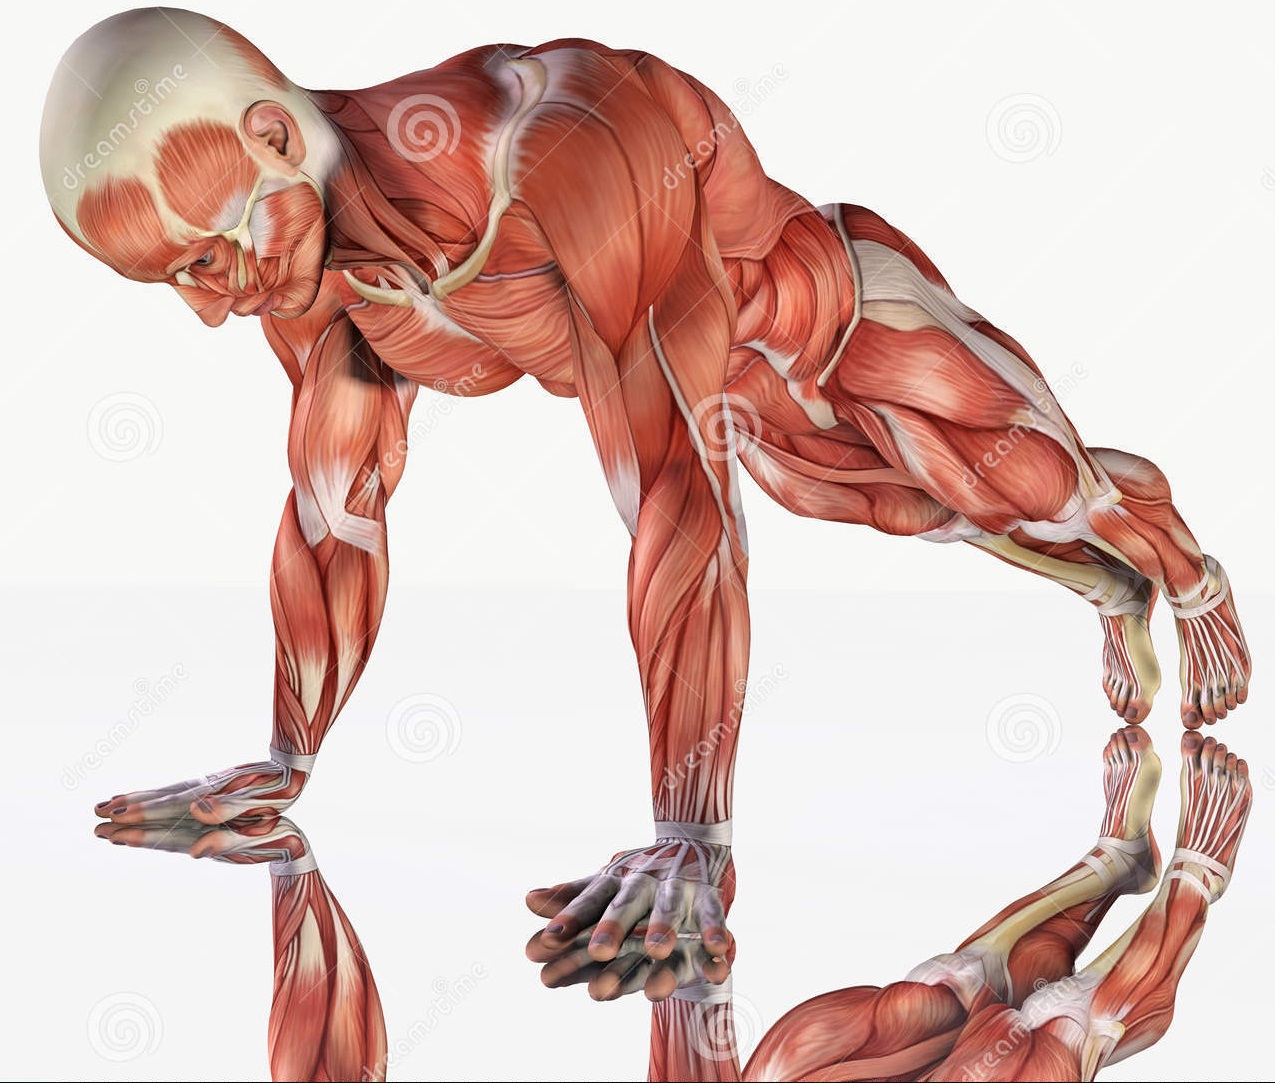 sistema-muscular-de-ejercicio-masculino-53514611